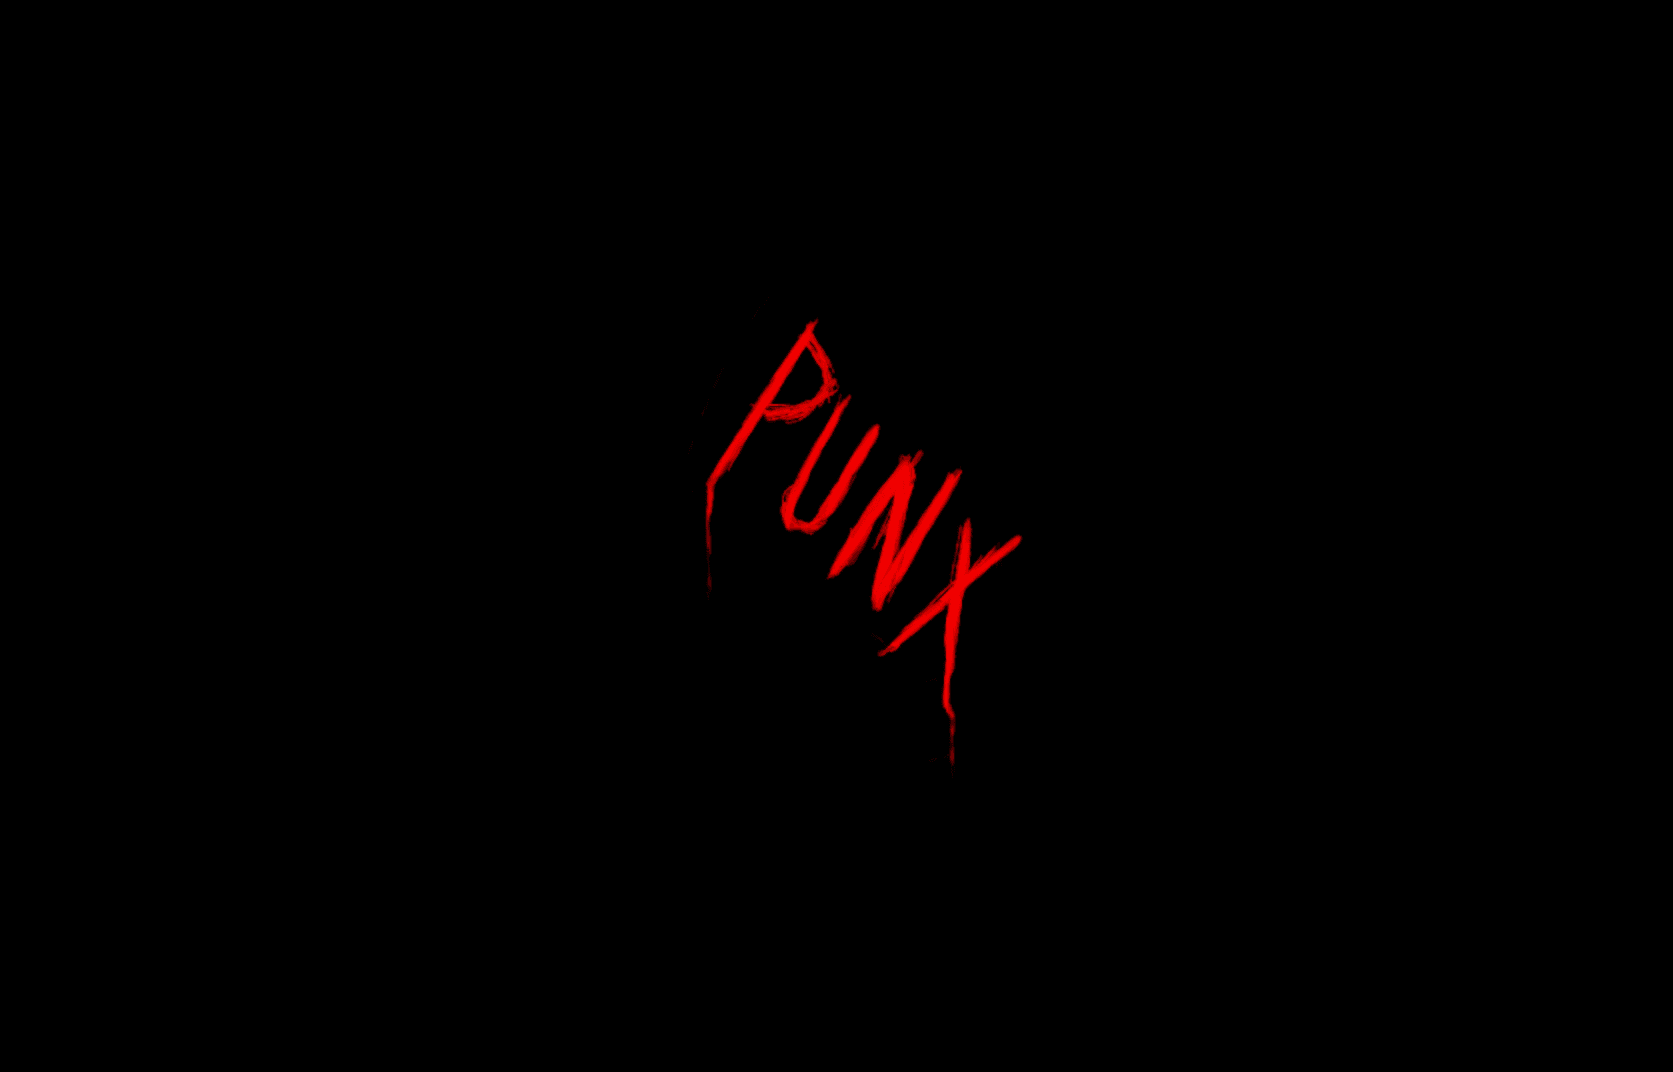 punx_art バナー